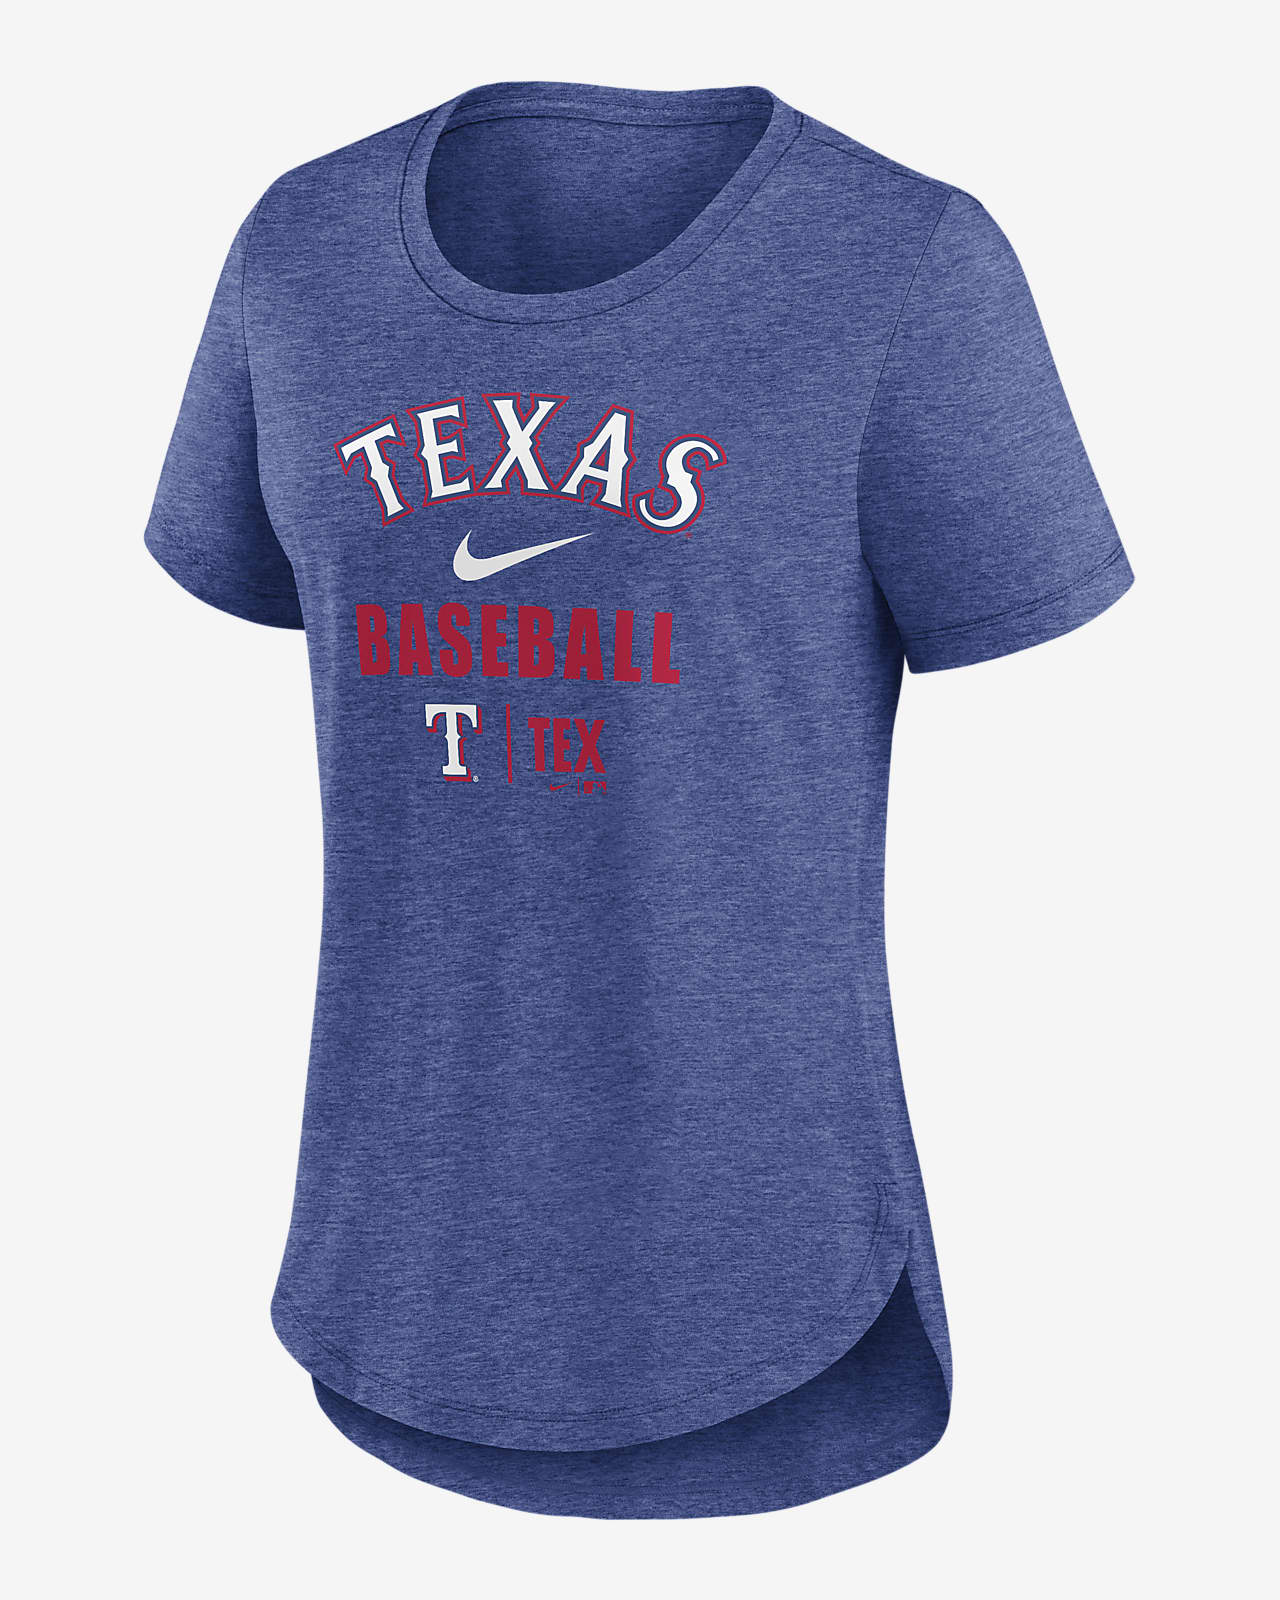 texas rangers shirt women's